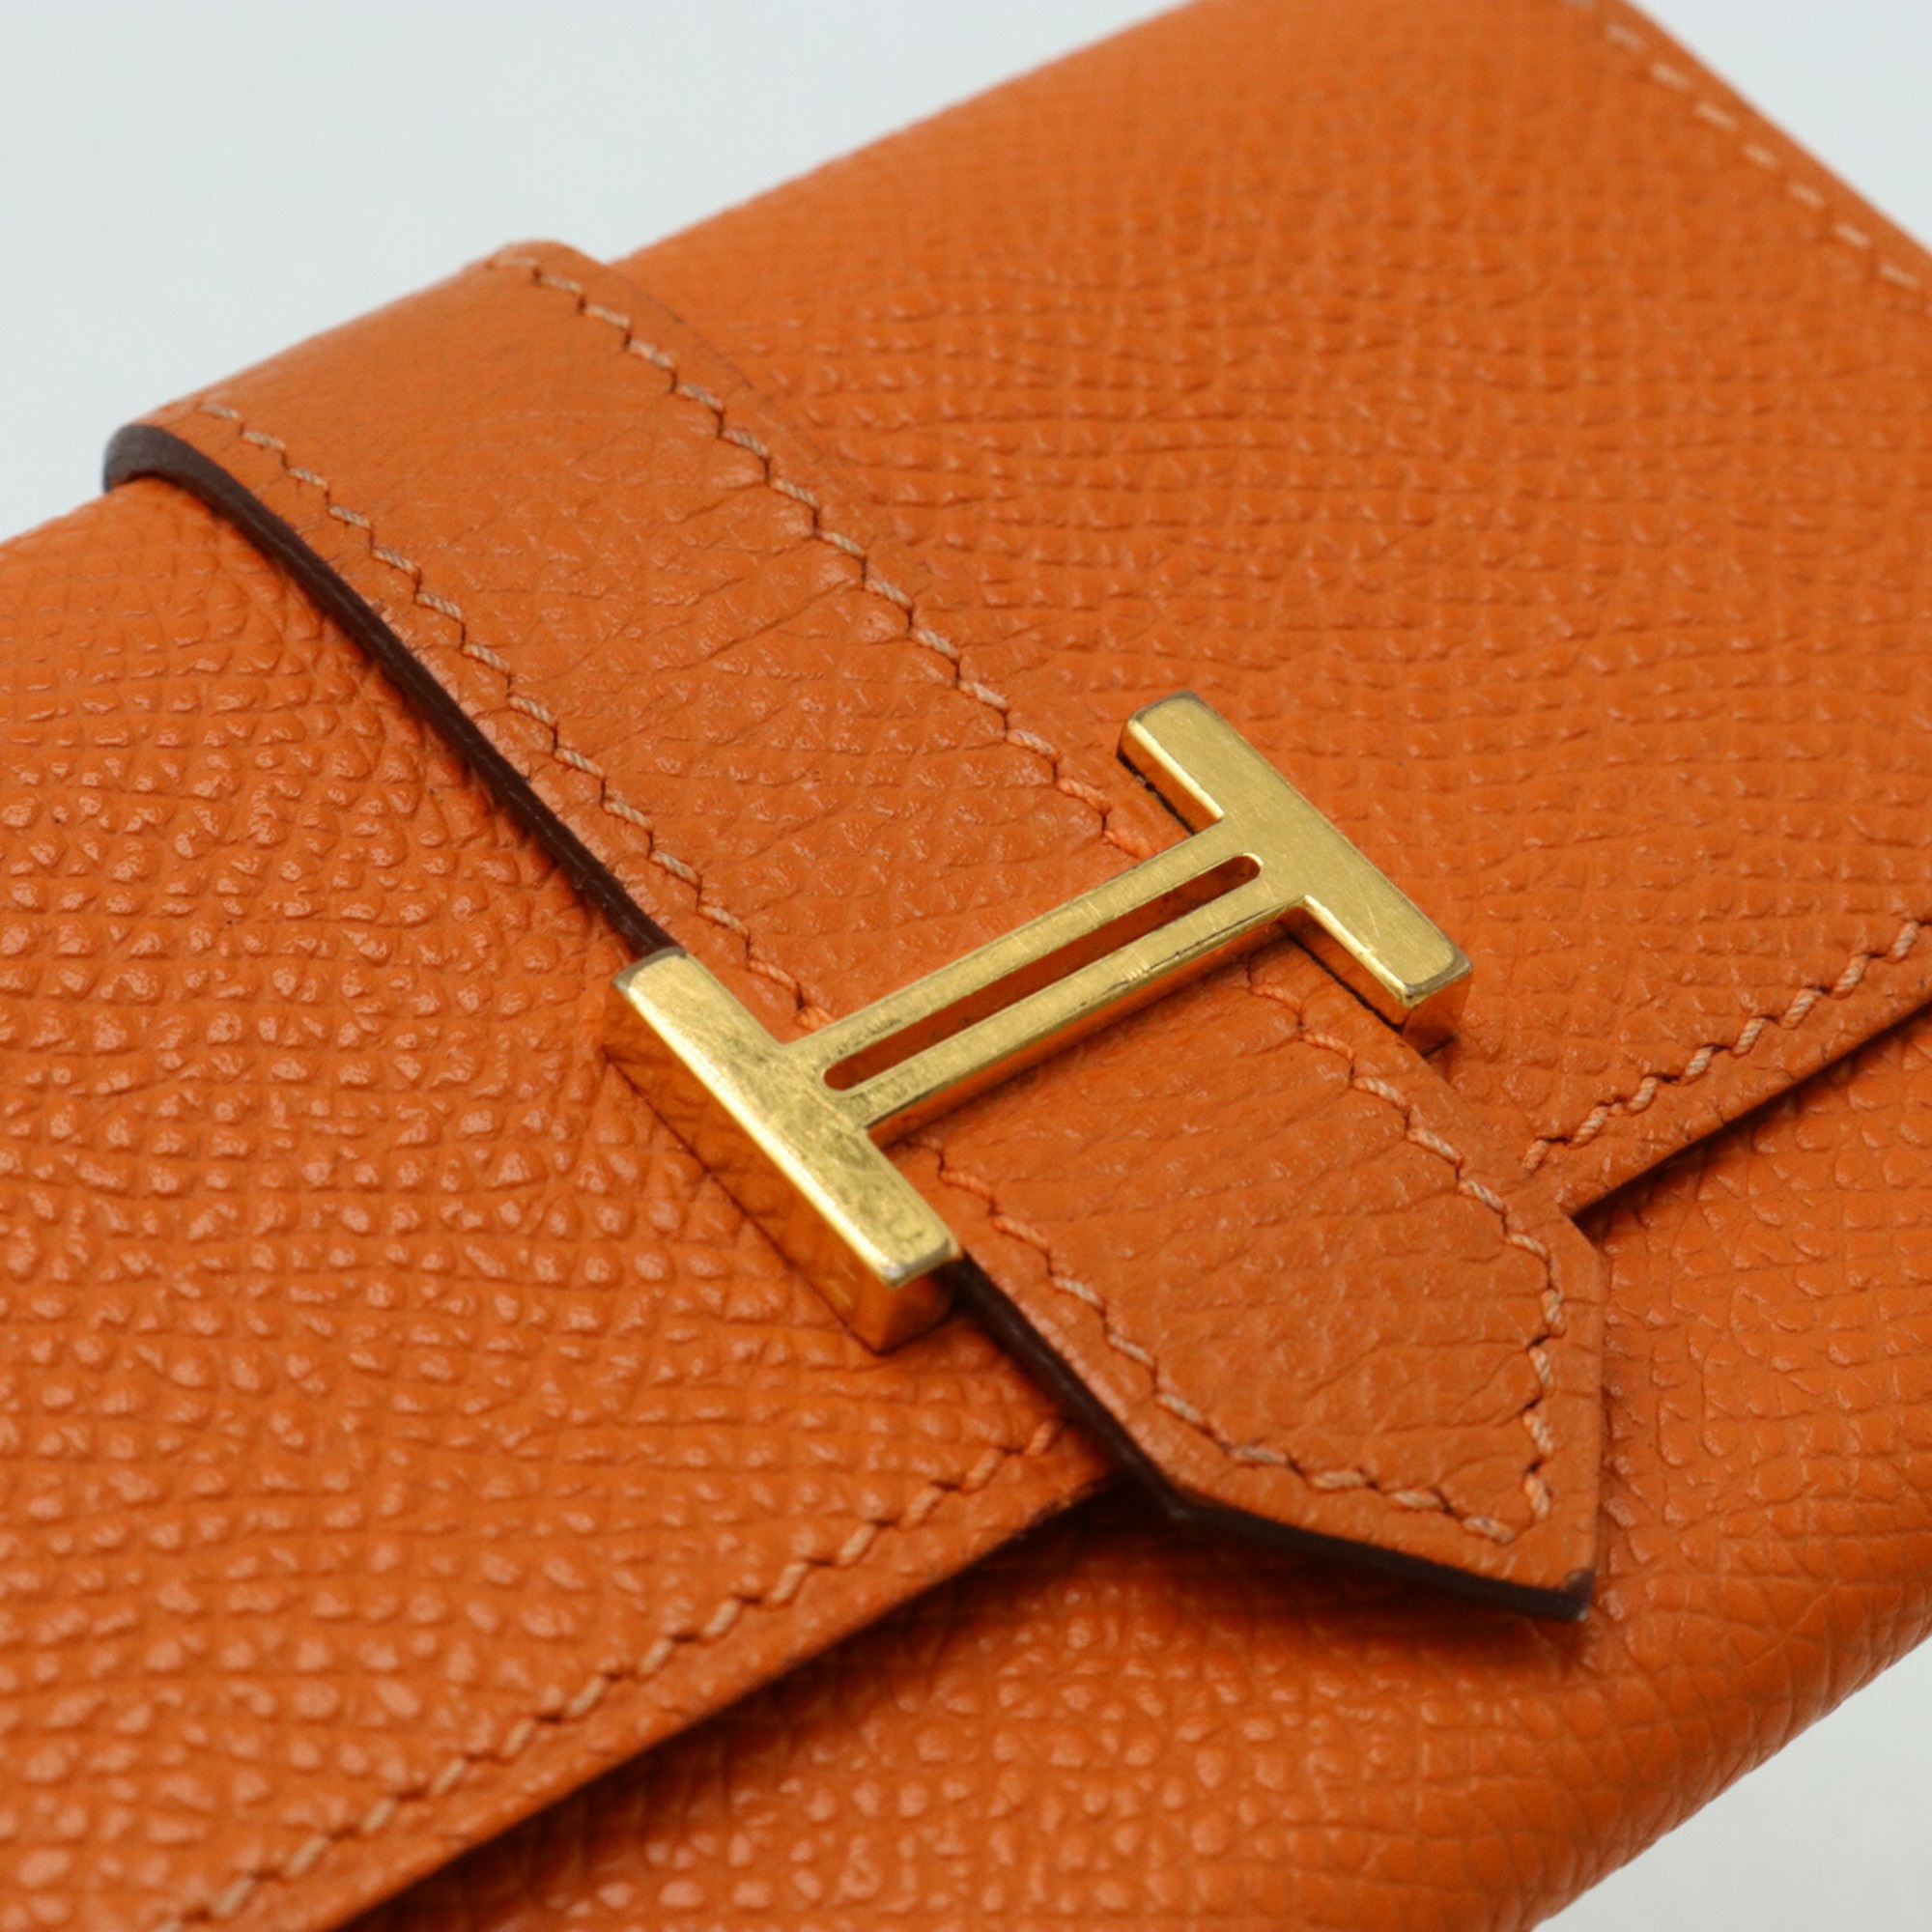 HERMES Bearn Card Case, Business Holder, Pass Epsom Leather, Orange, J Stamp